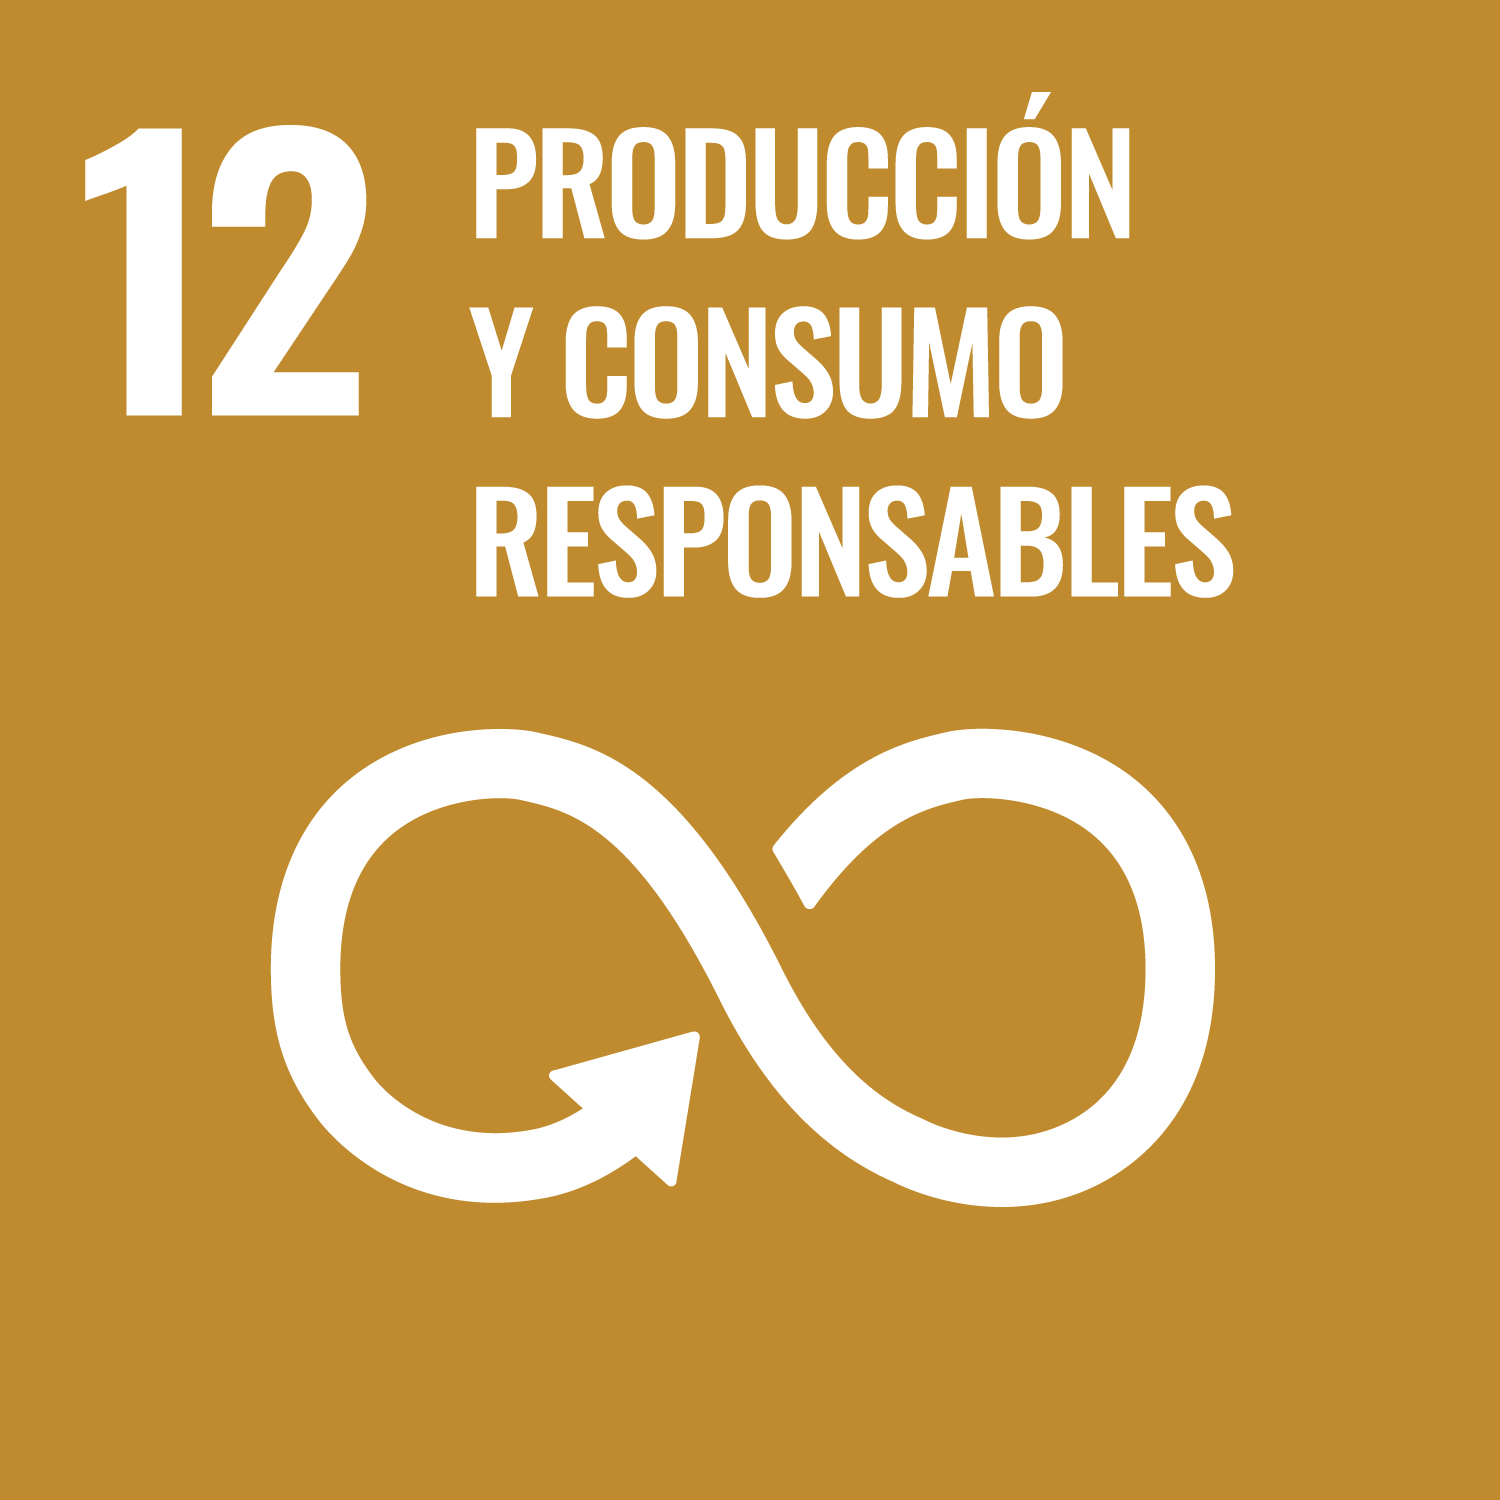 ODS 12 Producción y consumo responsables